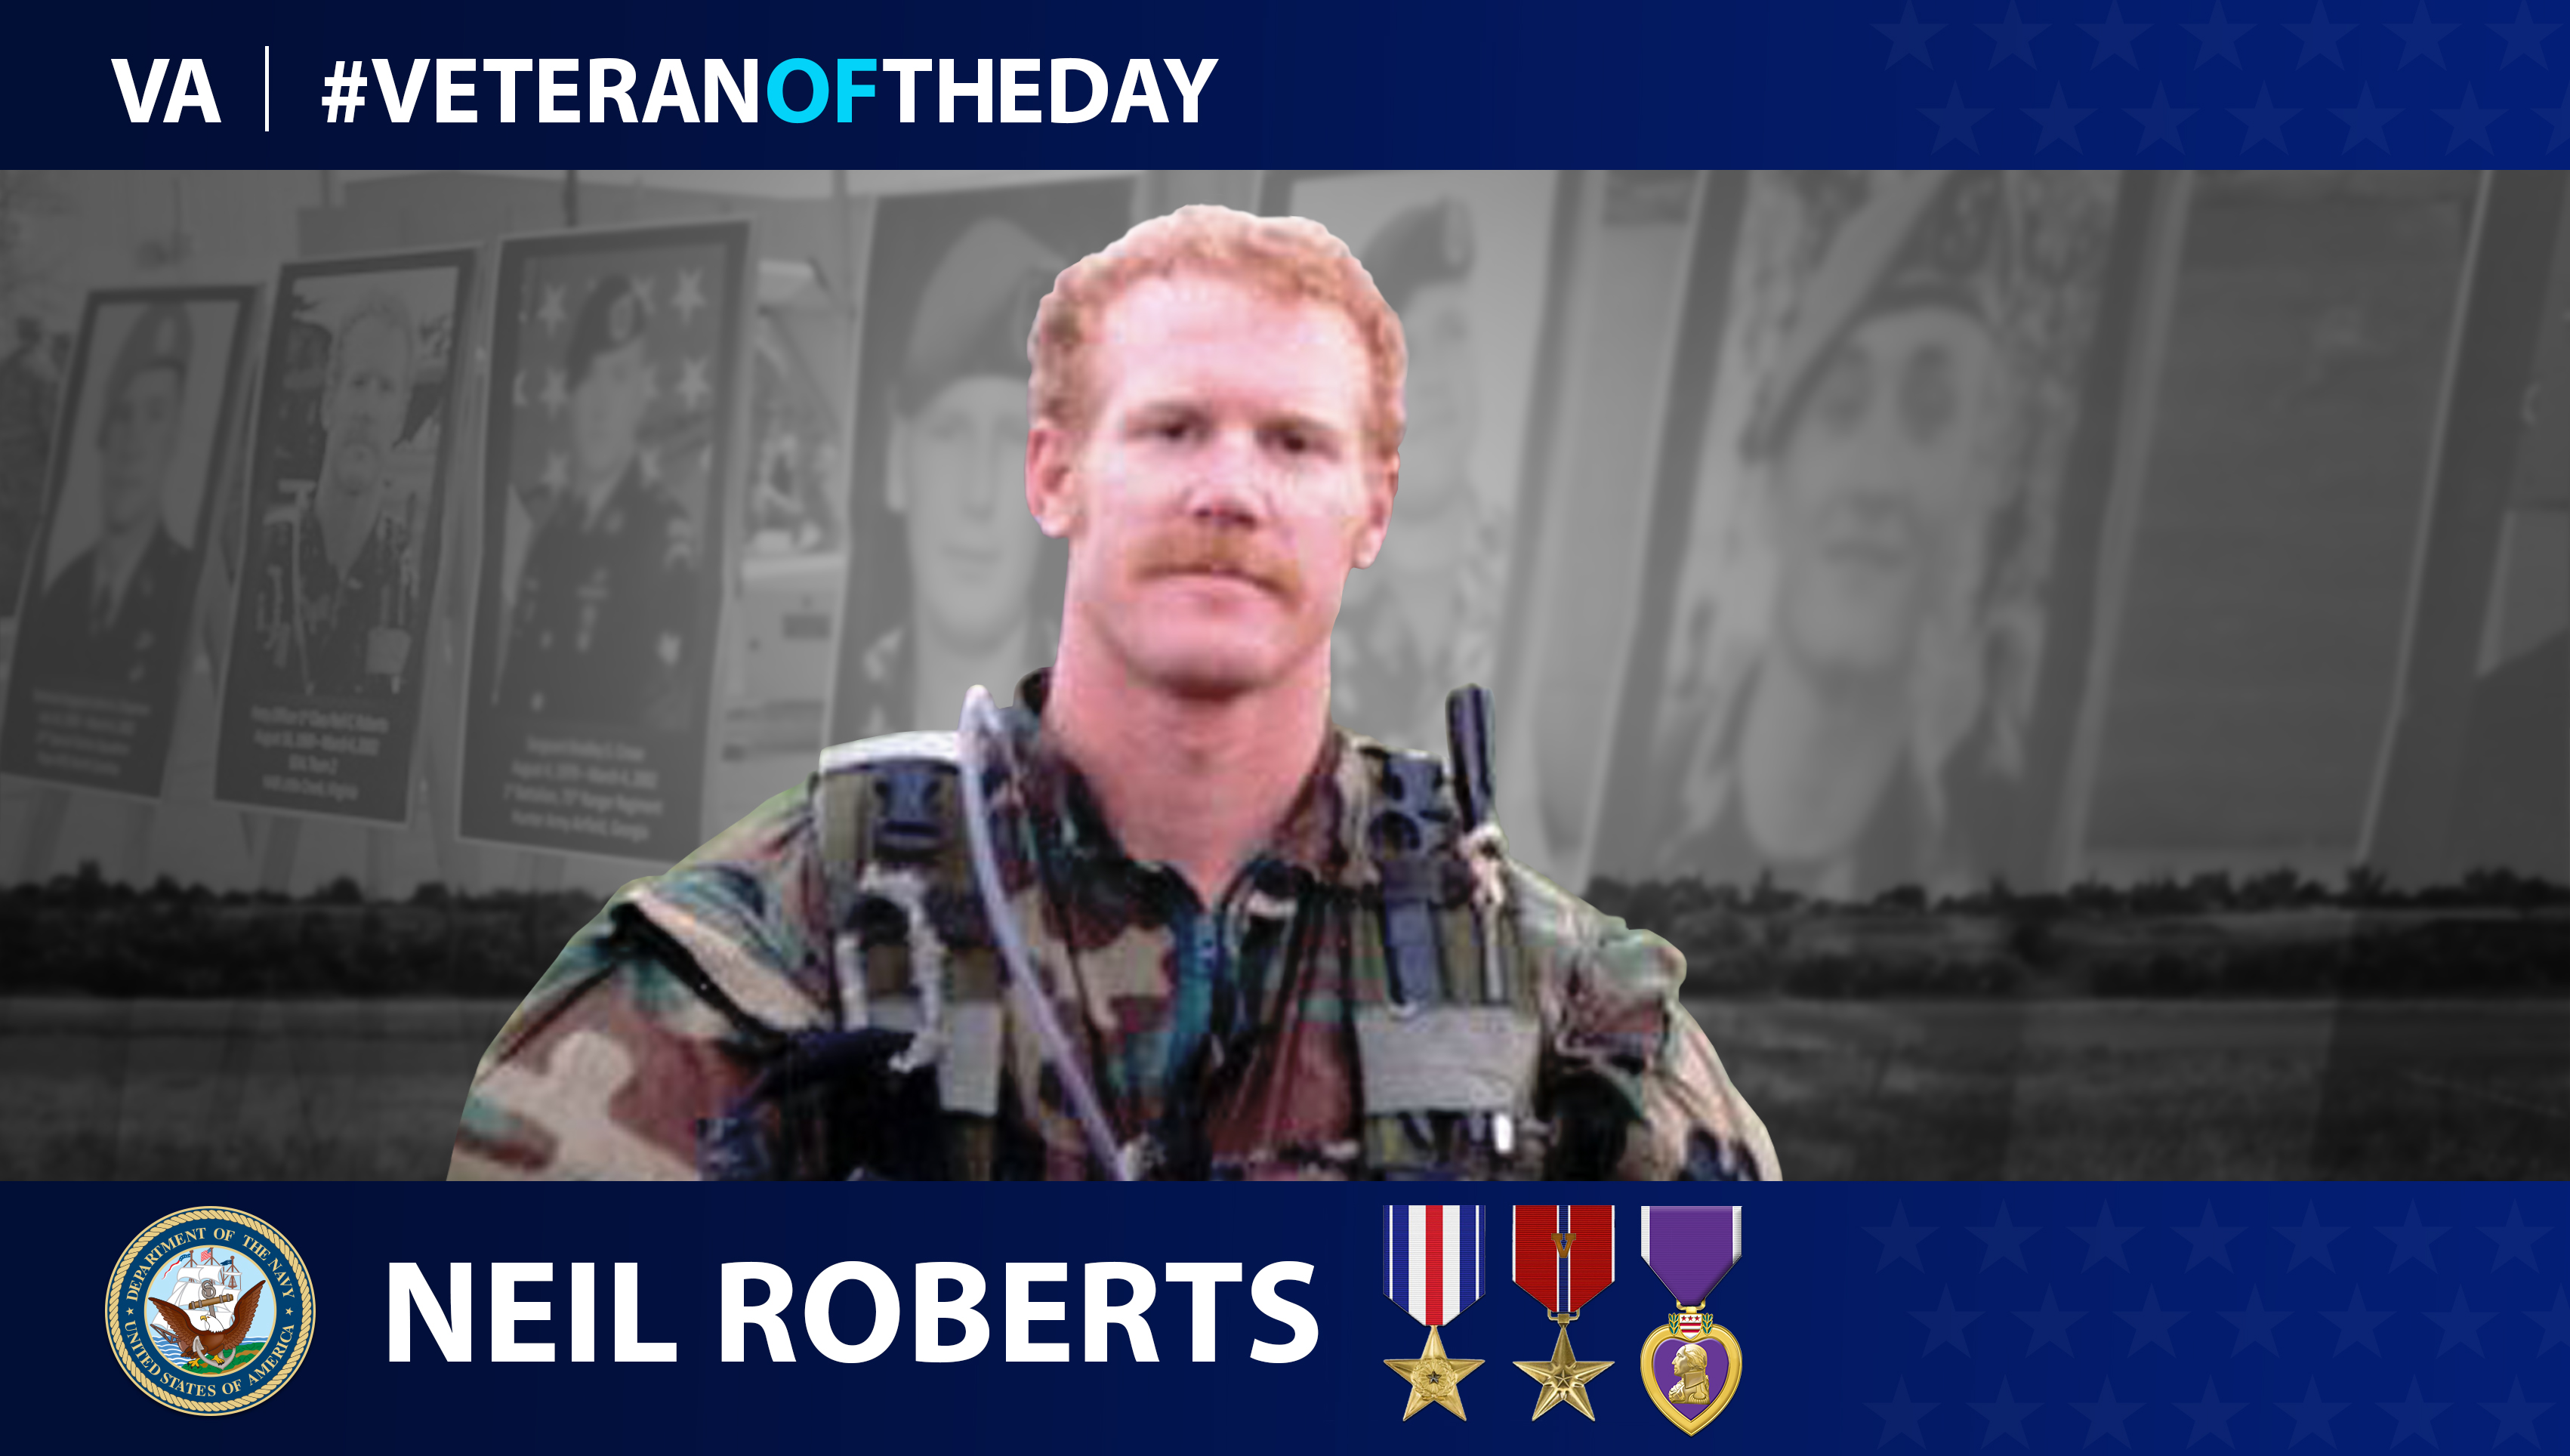 Navy Veteran Neil C. Roberts is today's Veteran of the Day.